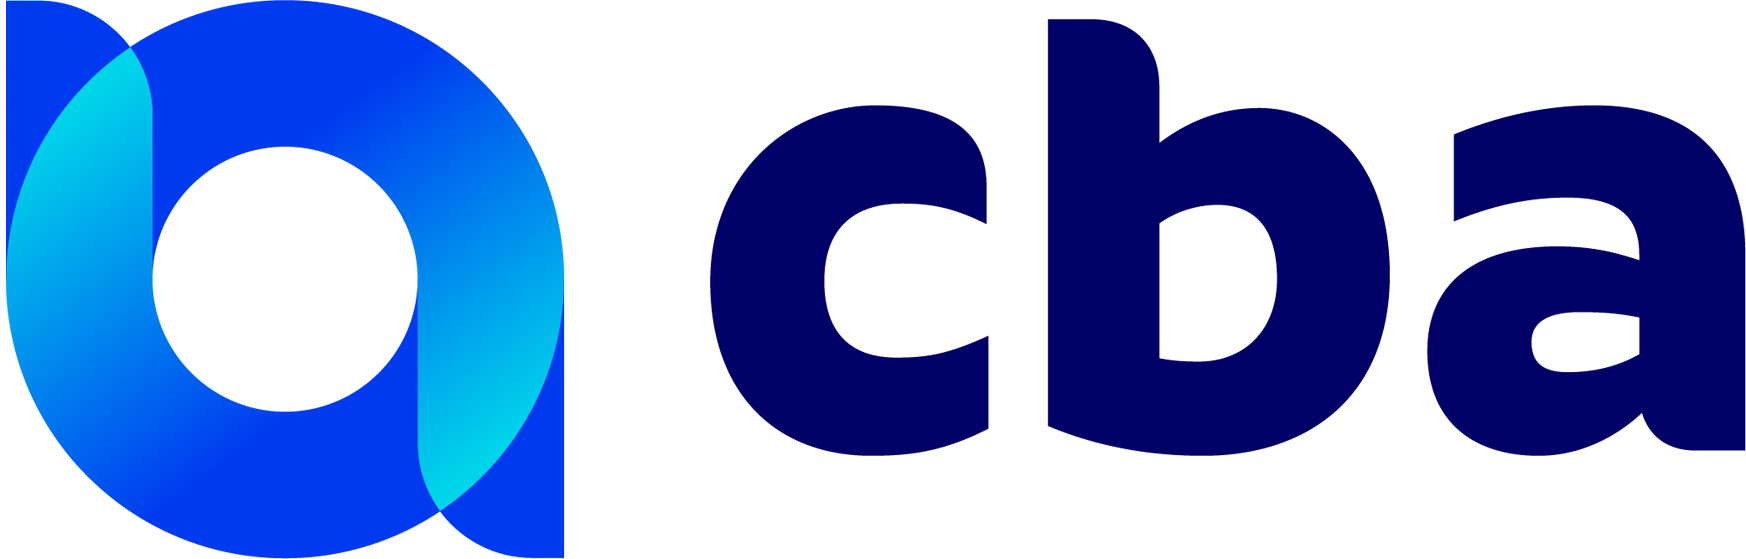 CBA logo